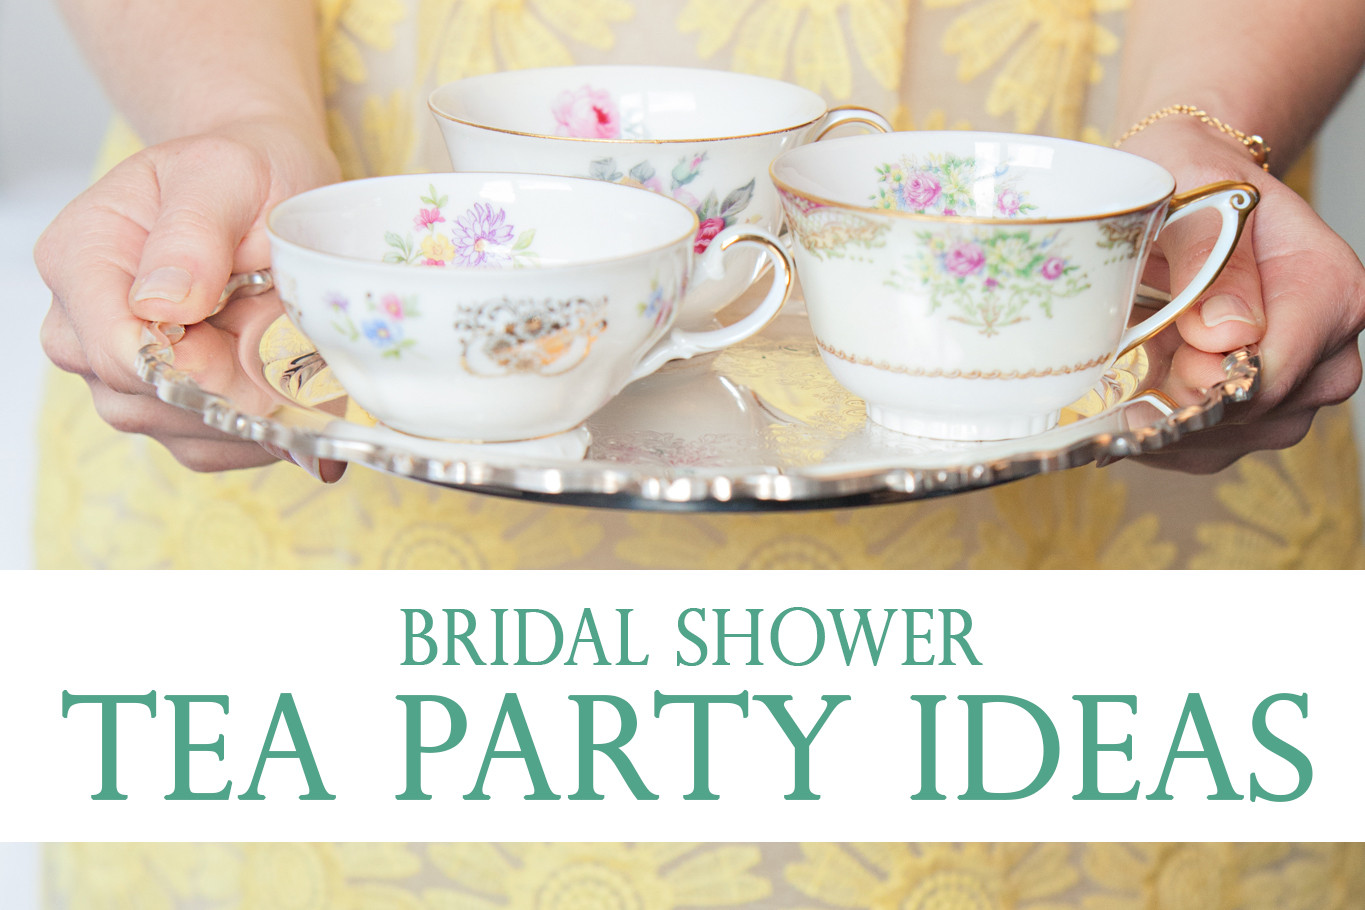 Tea Party Shower Ideas
 Bridal Shower Tea Party Ideas